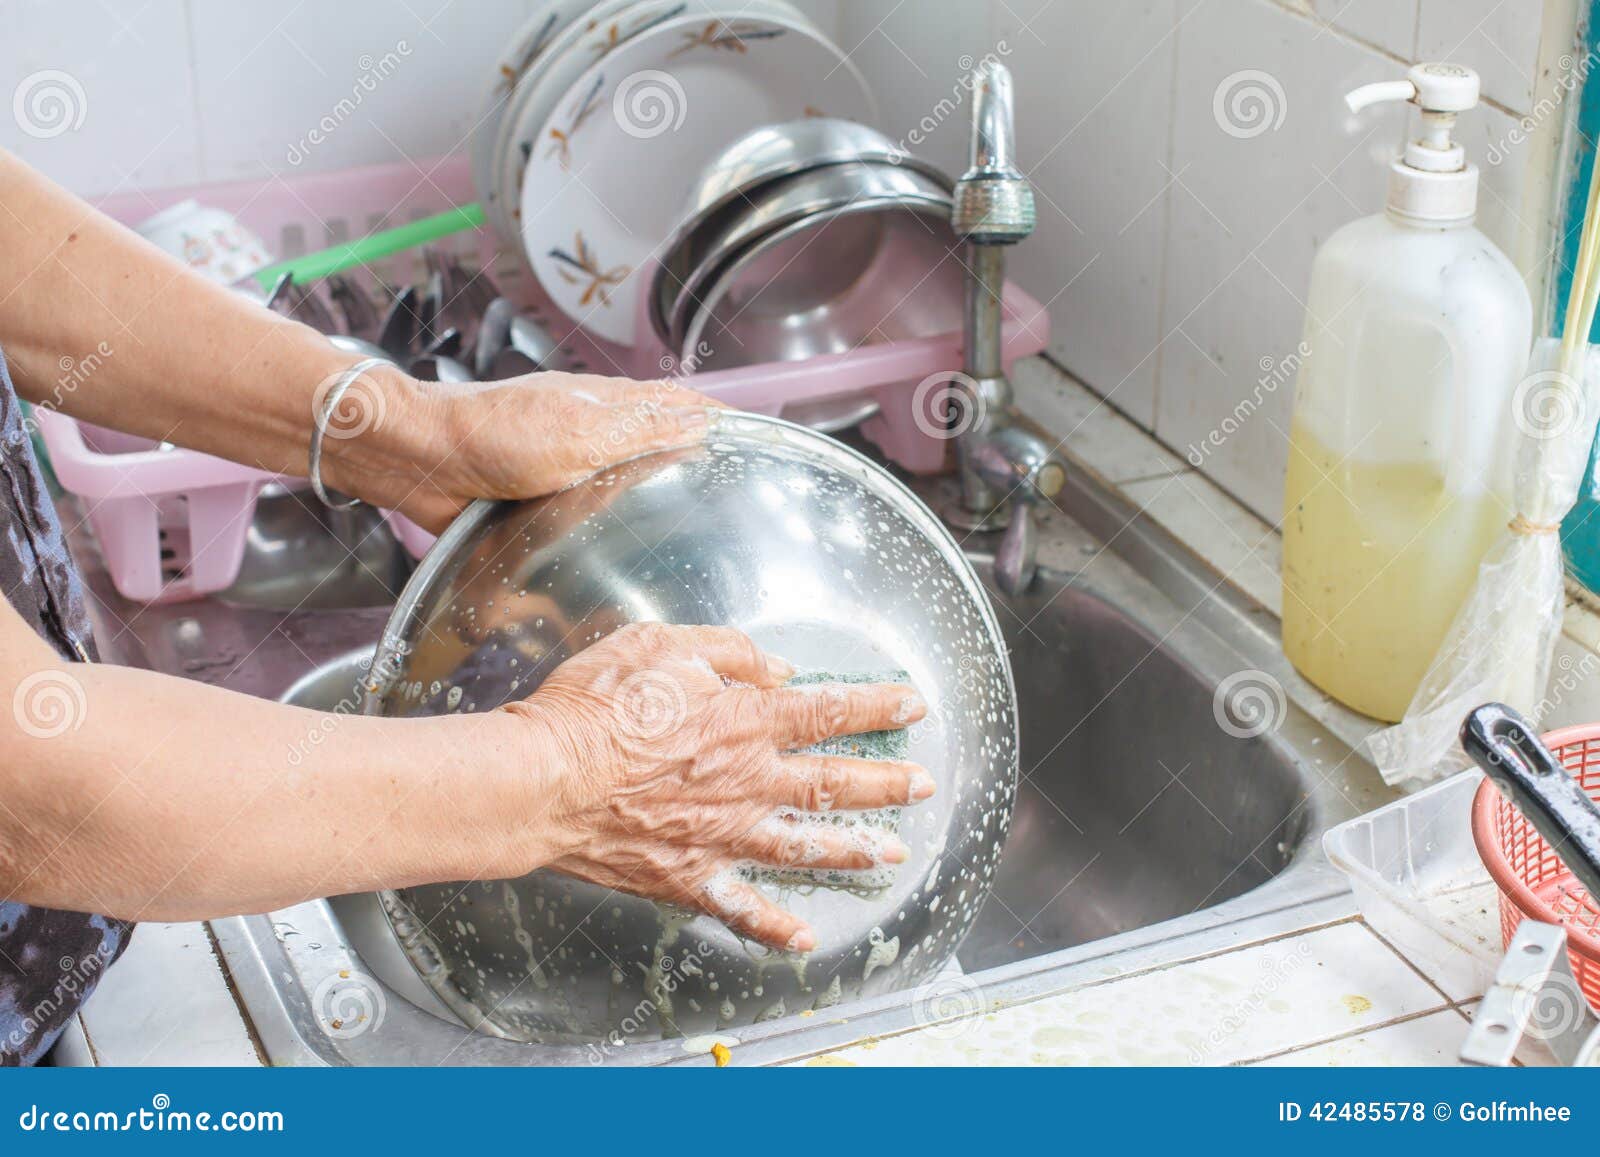 Мыть чужую посуду во сне. Руки моют посуду. Моем посуду руками. Тарелка помытая в руке. Мыть посуду во сне.